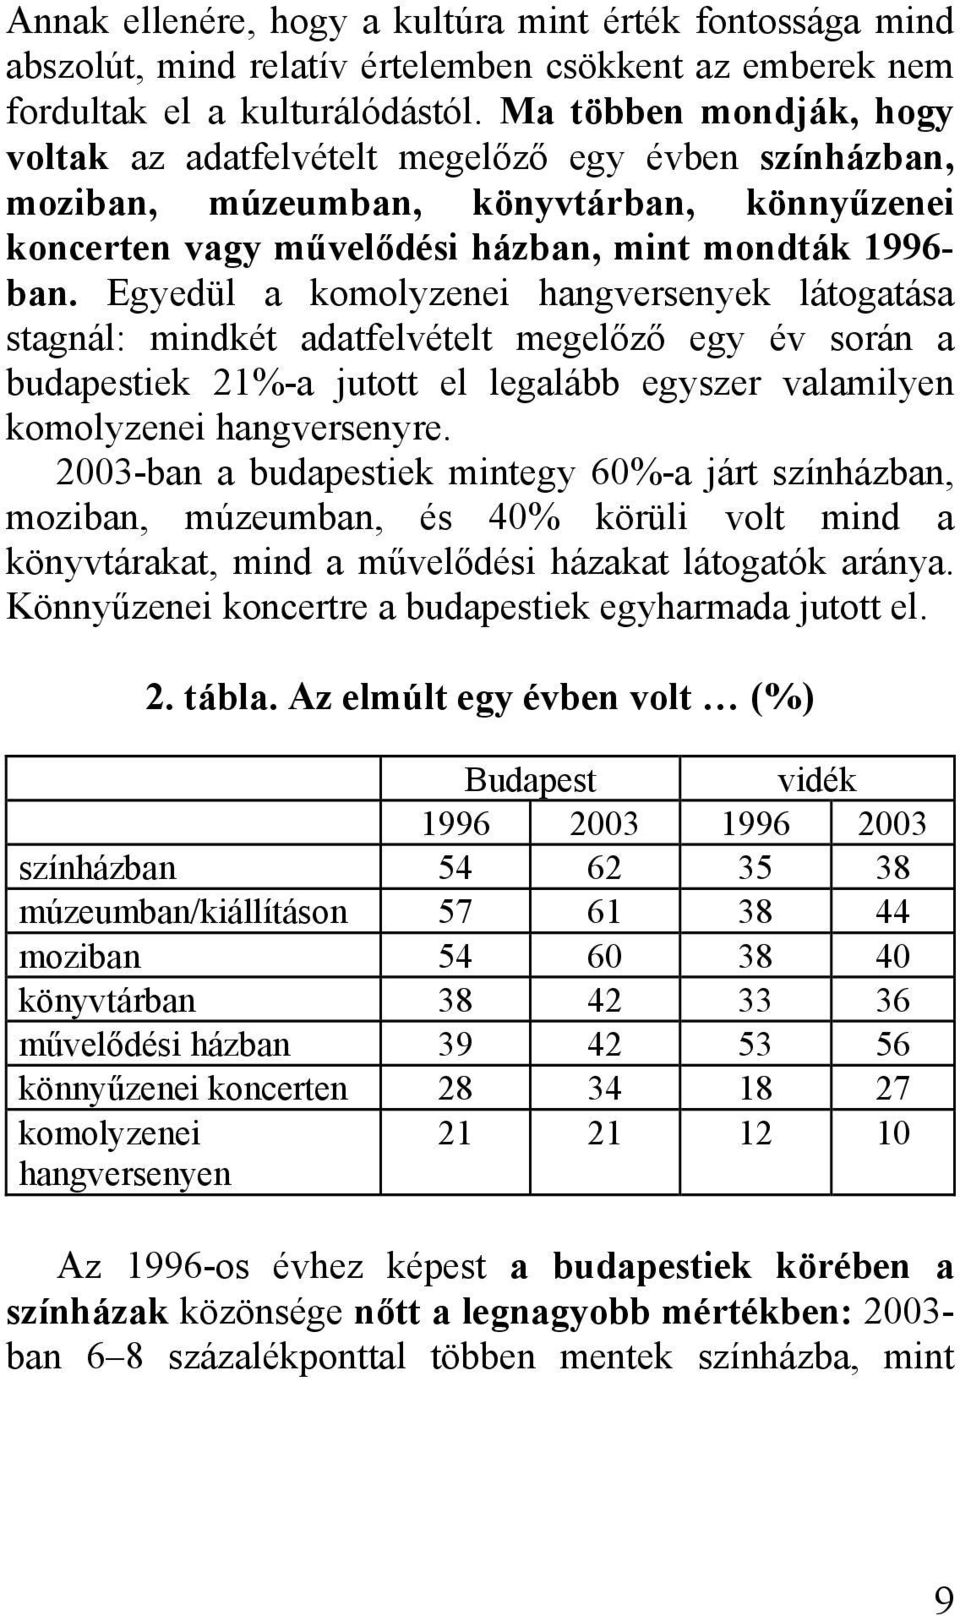 Egyedül a komolyzenei hangversenyek látogatása stagnál: mindkét adatfelvételt megelőző egy év során a budapestiek 21%-a jutott el legalább egyszer valamilyen komolyzenei hangversenyre.